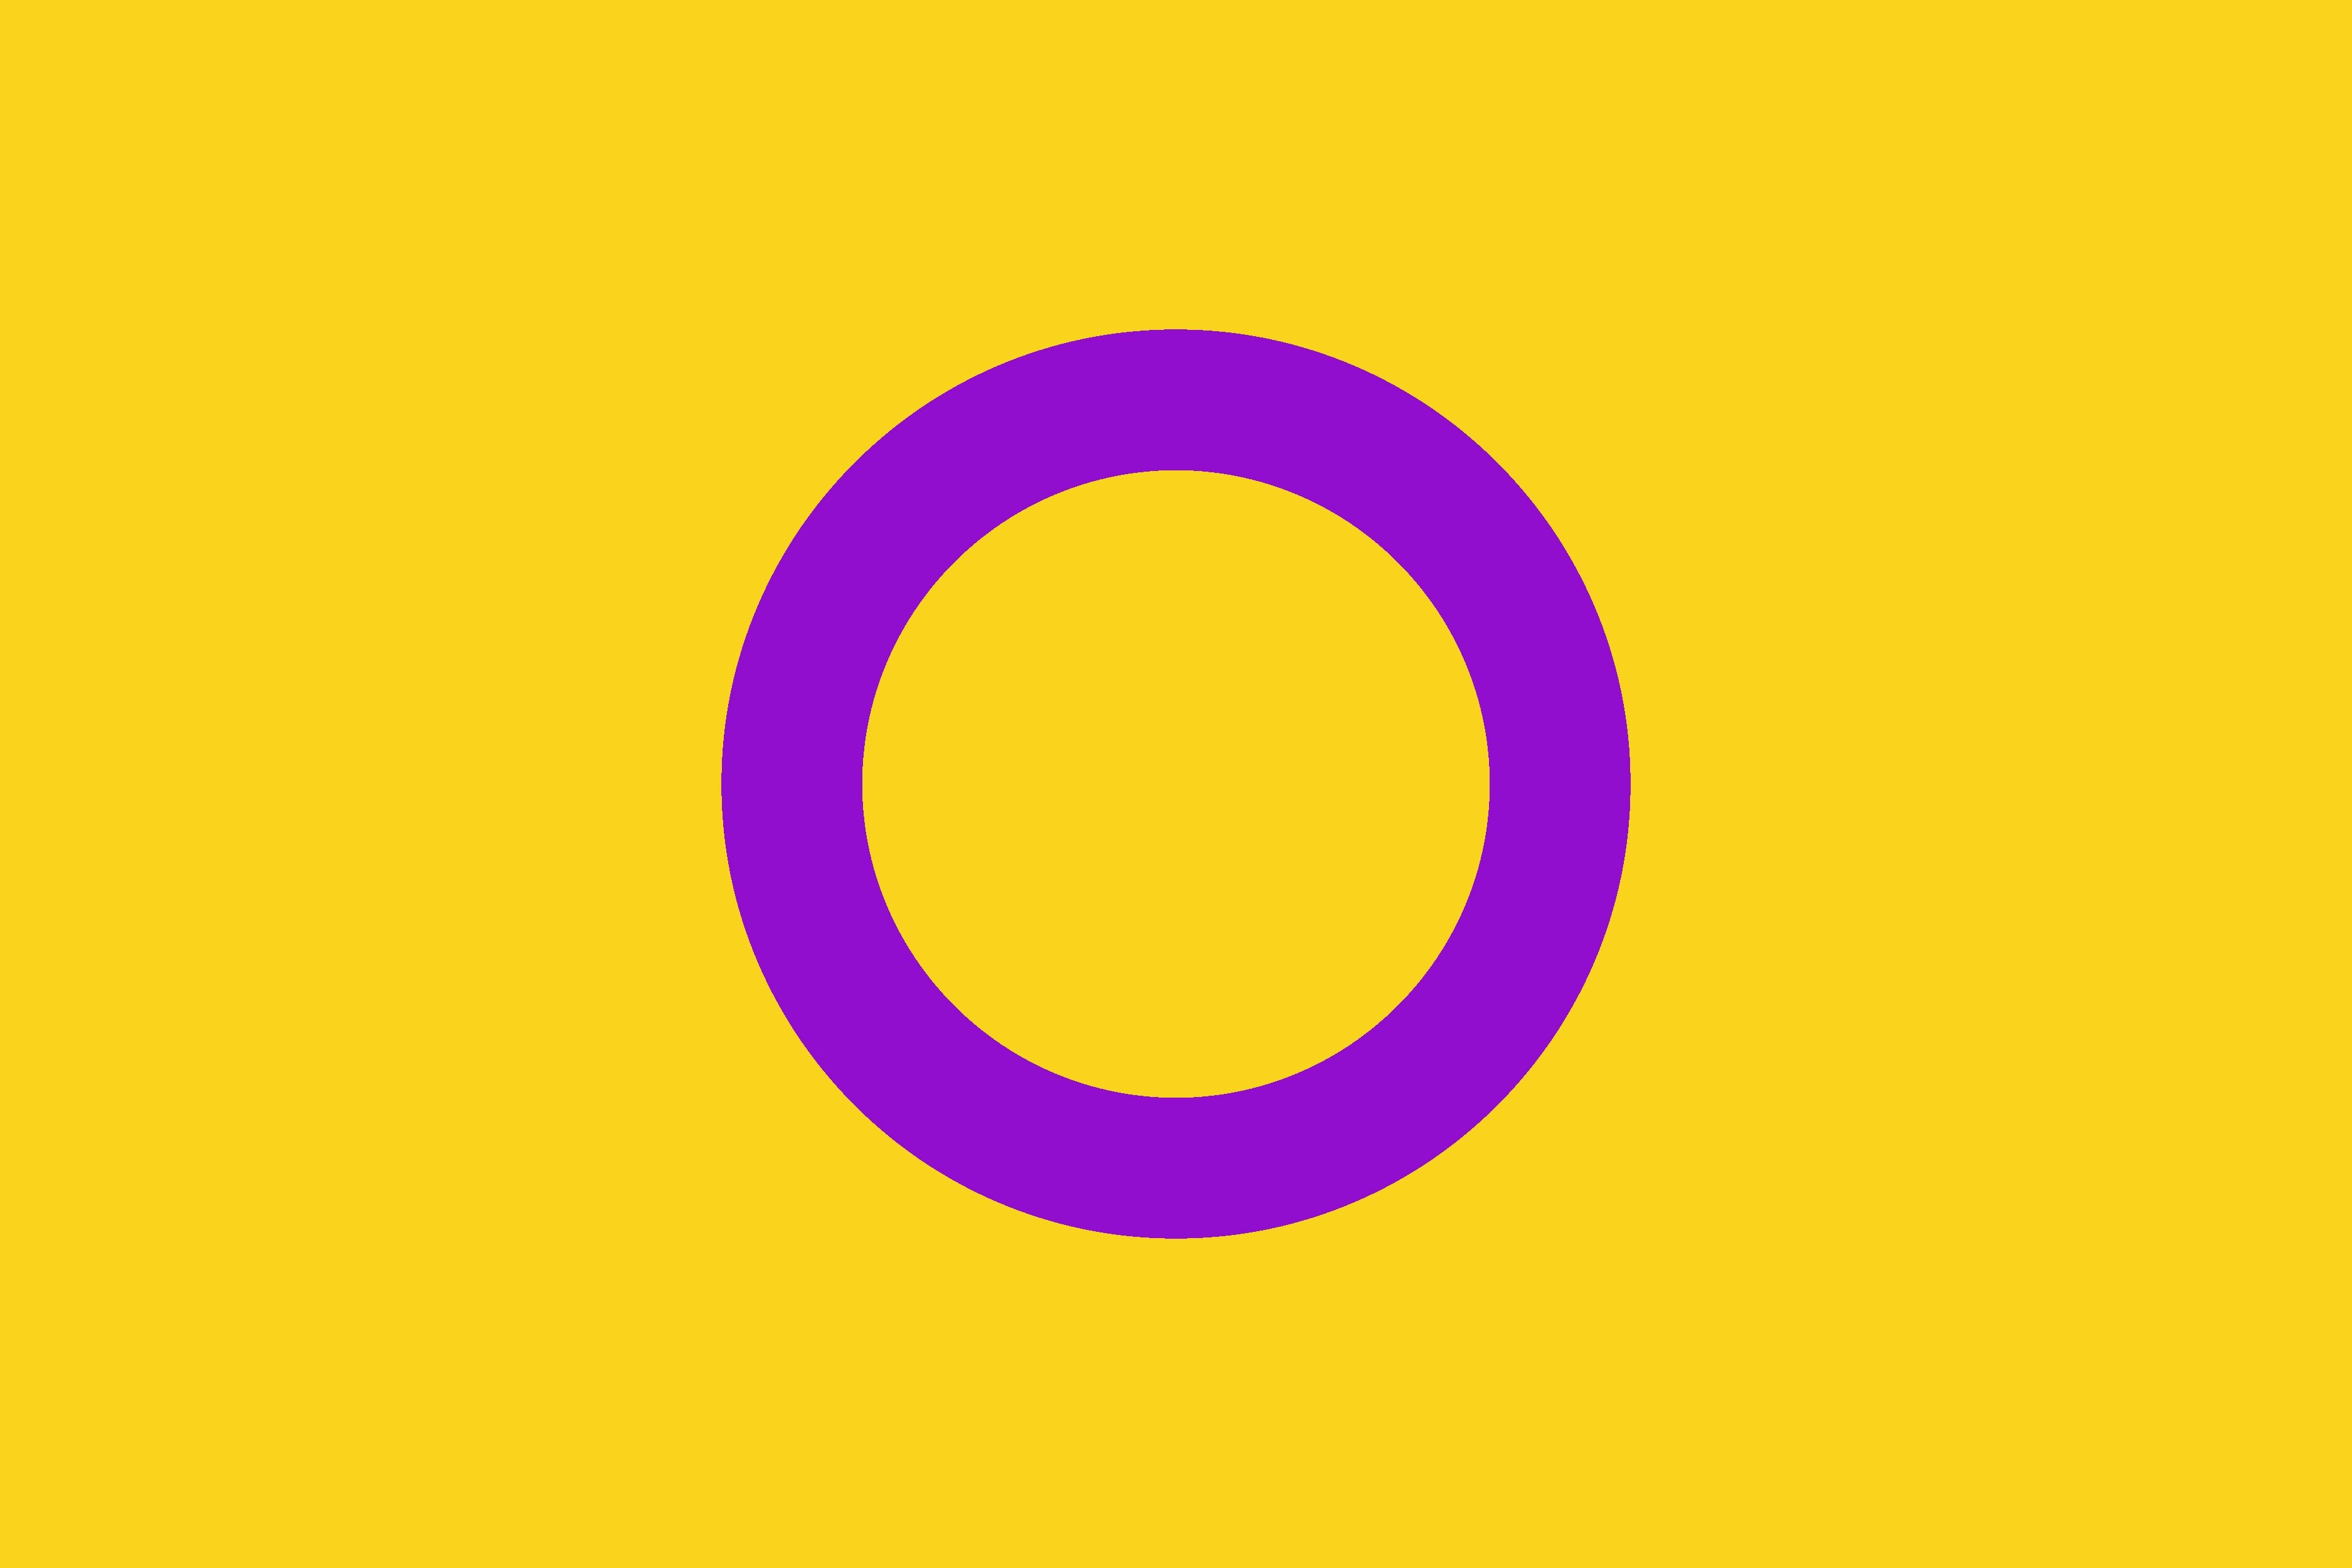 Bandeira intersexo com fundo amarelo e círculo lilás central.